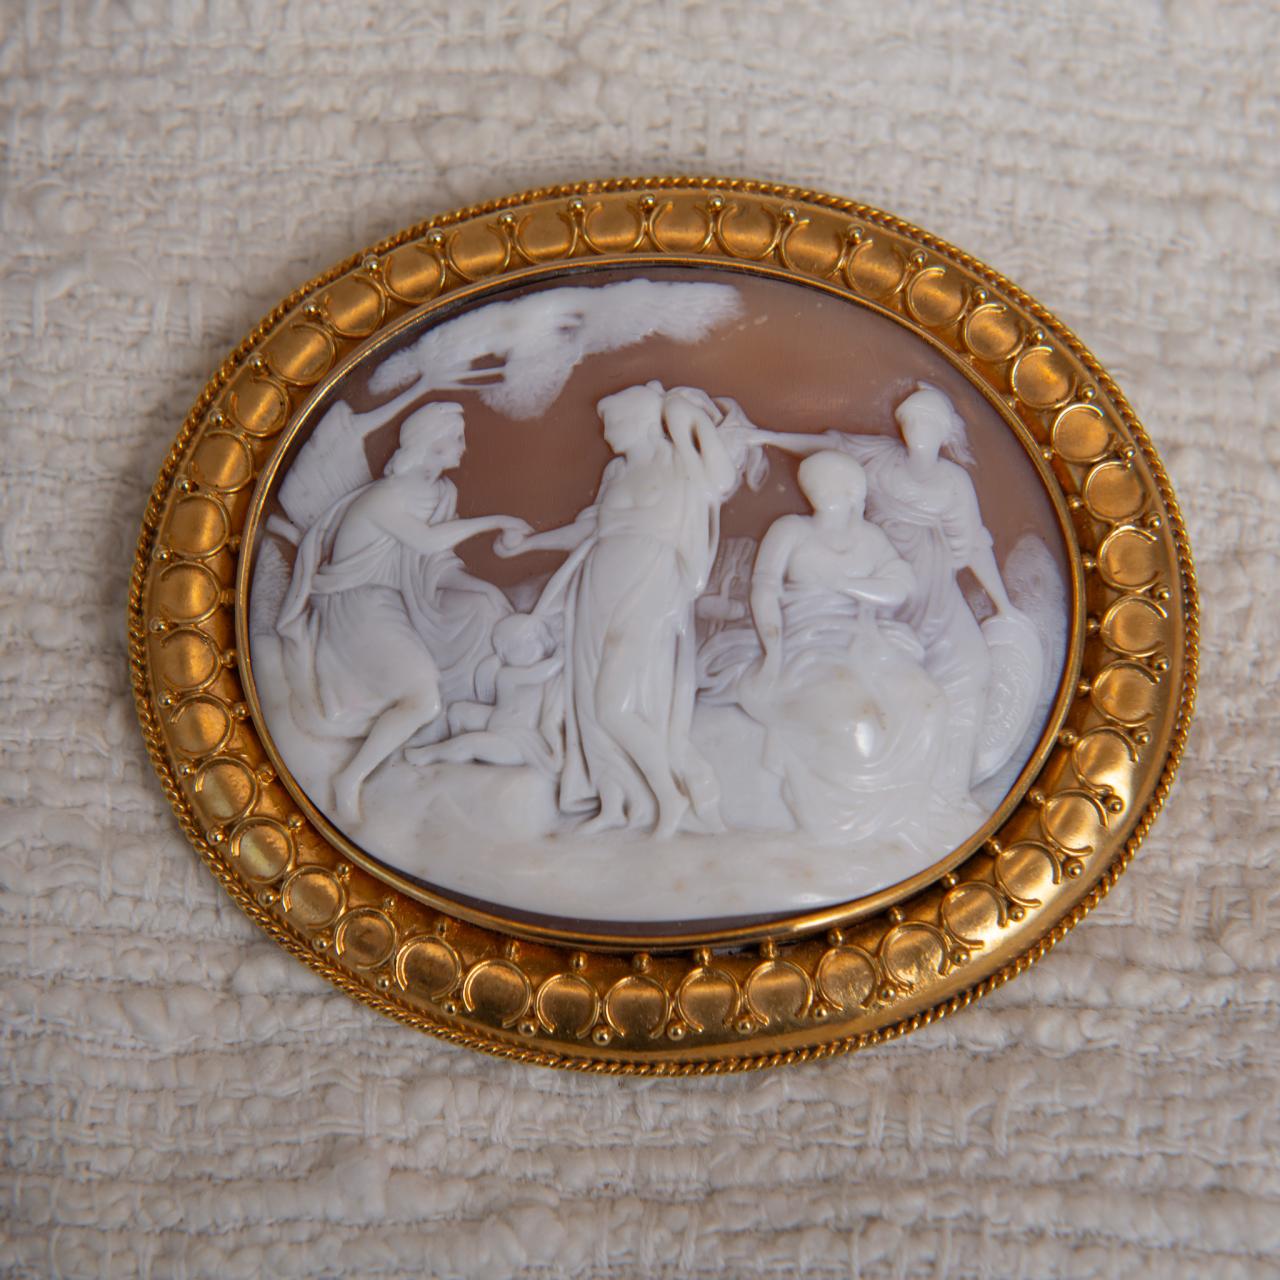 15ct gold antique cameo pendant